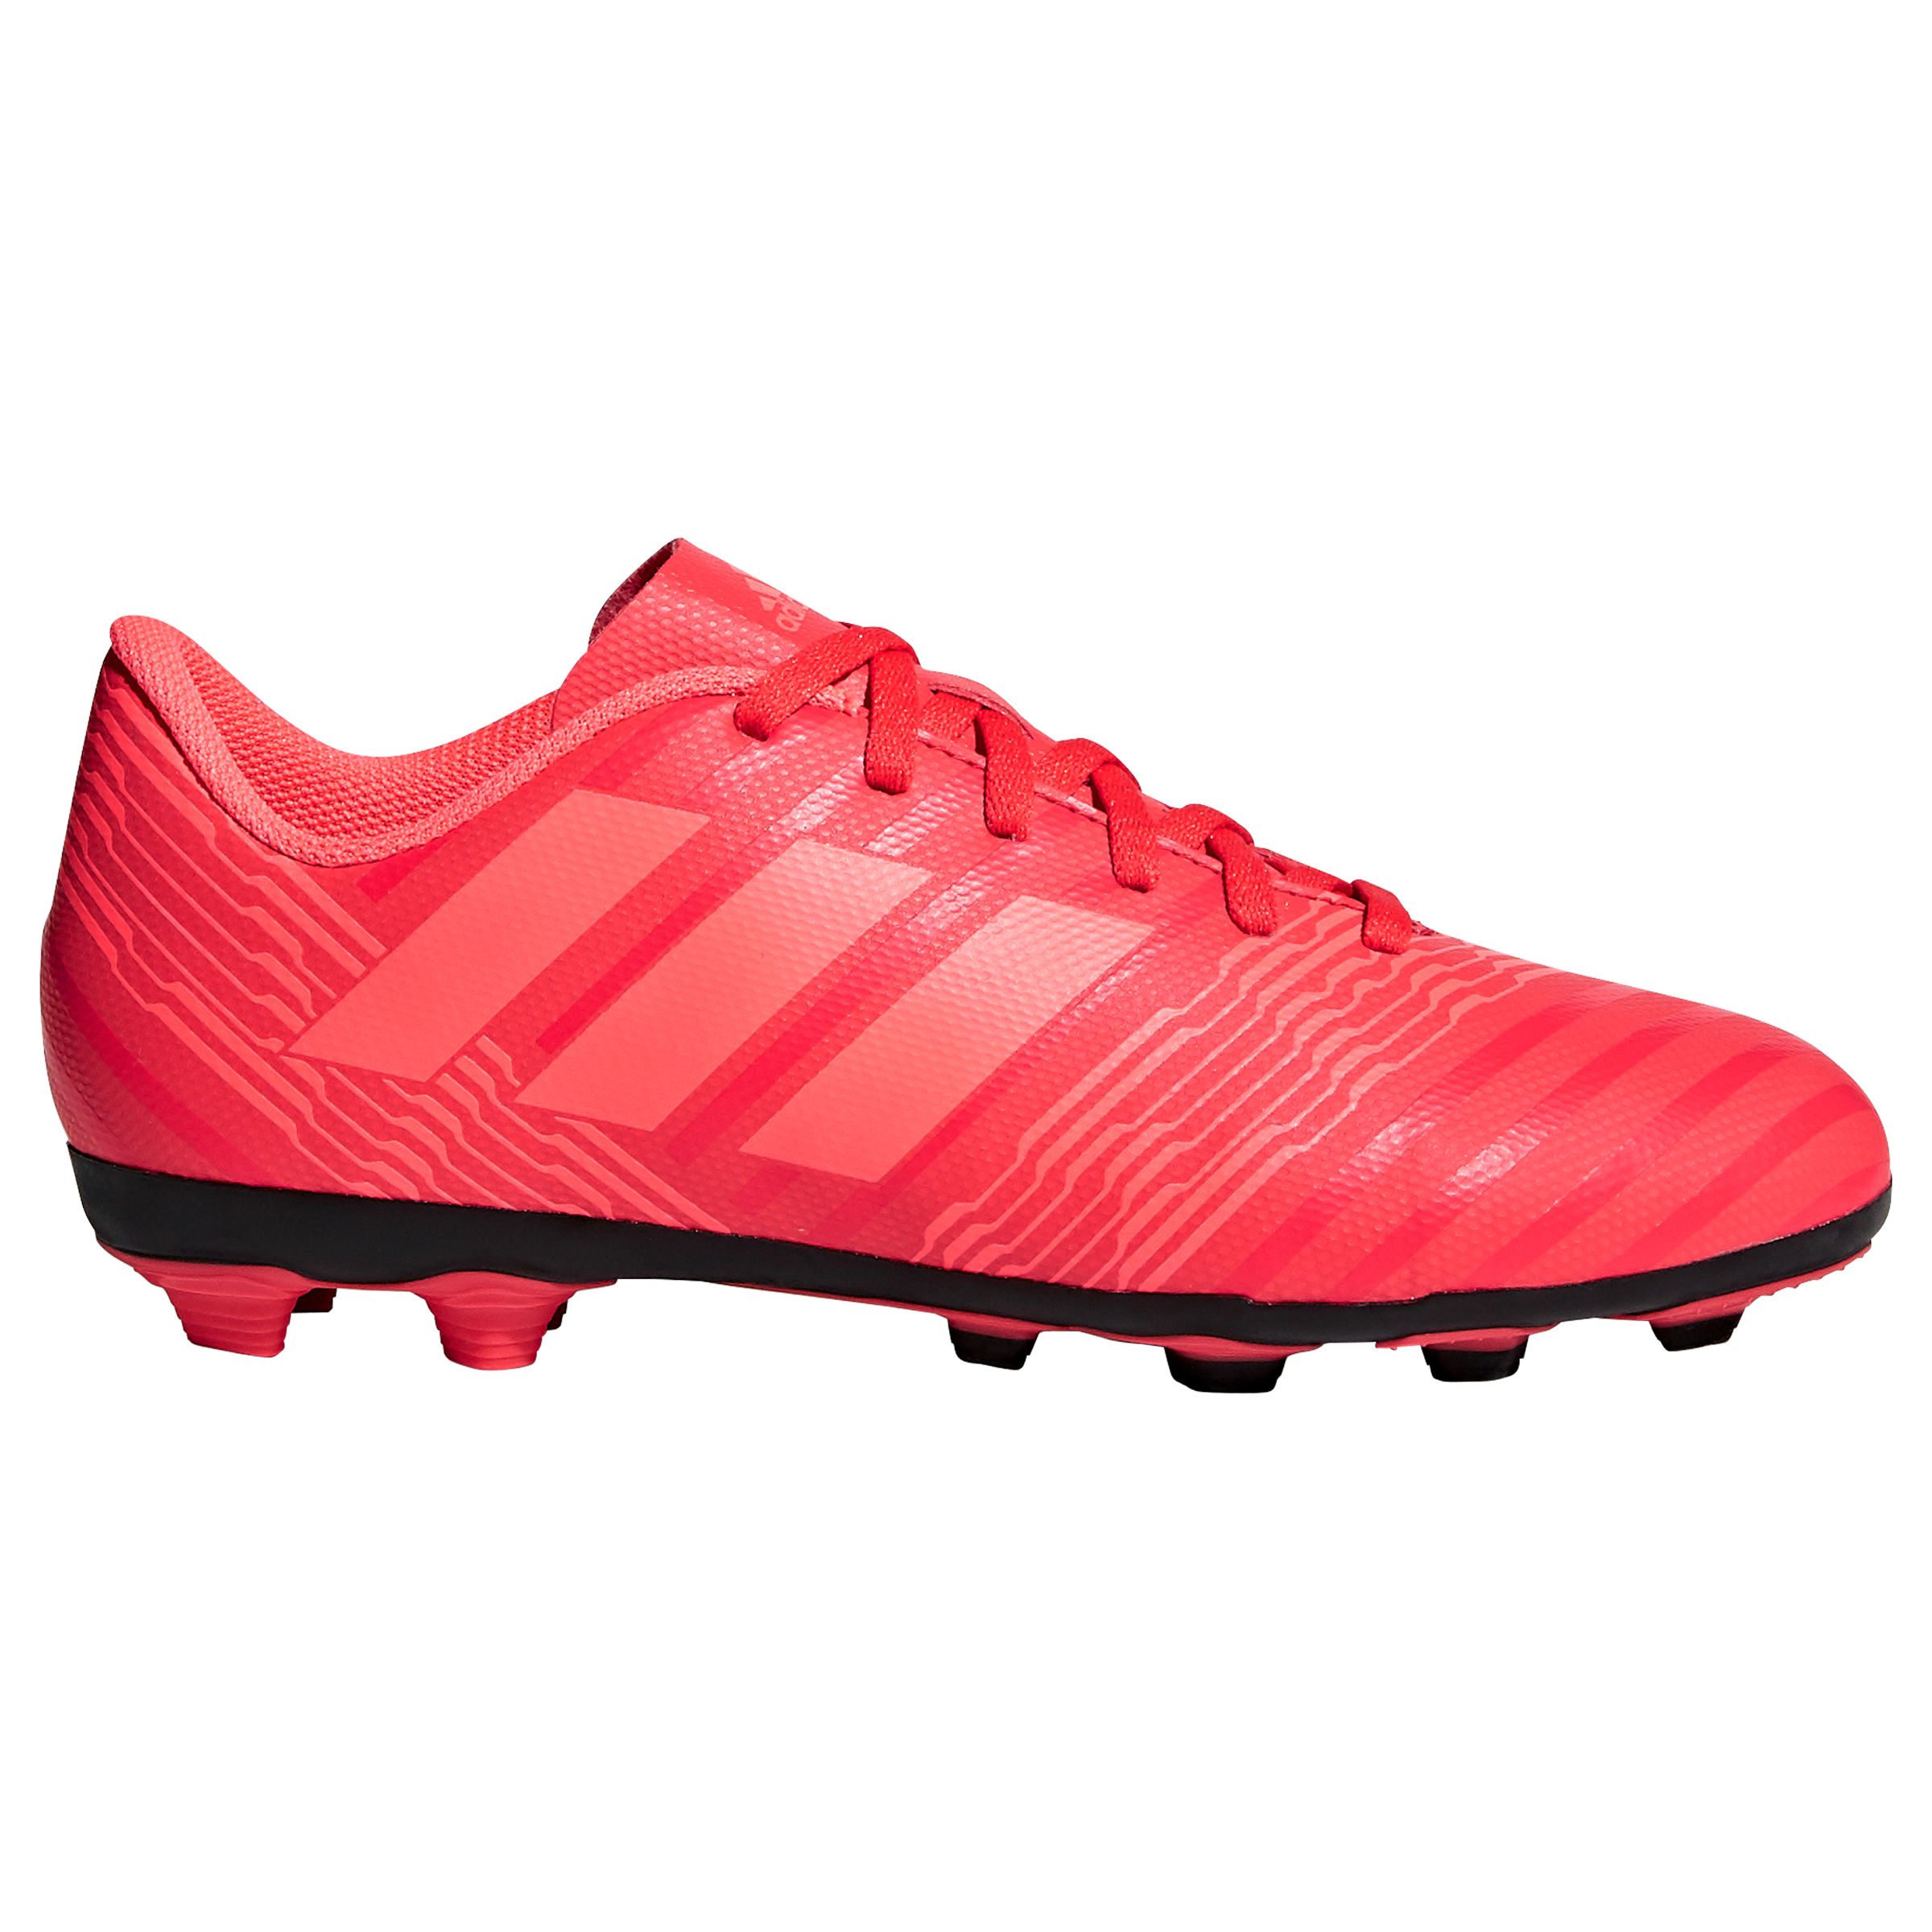 pink nemeziz football boots